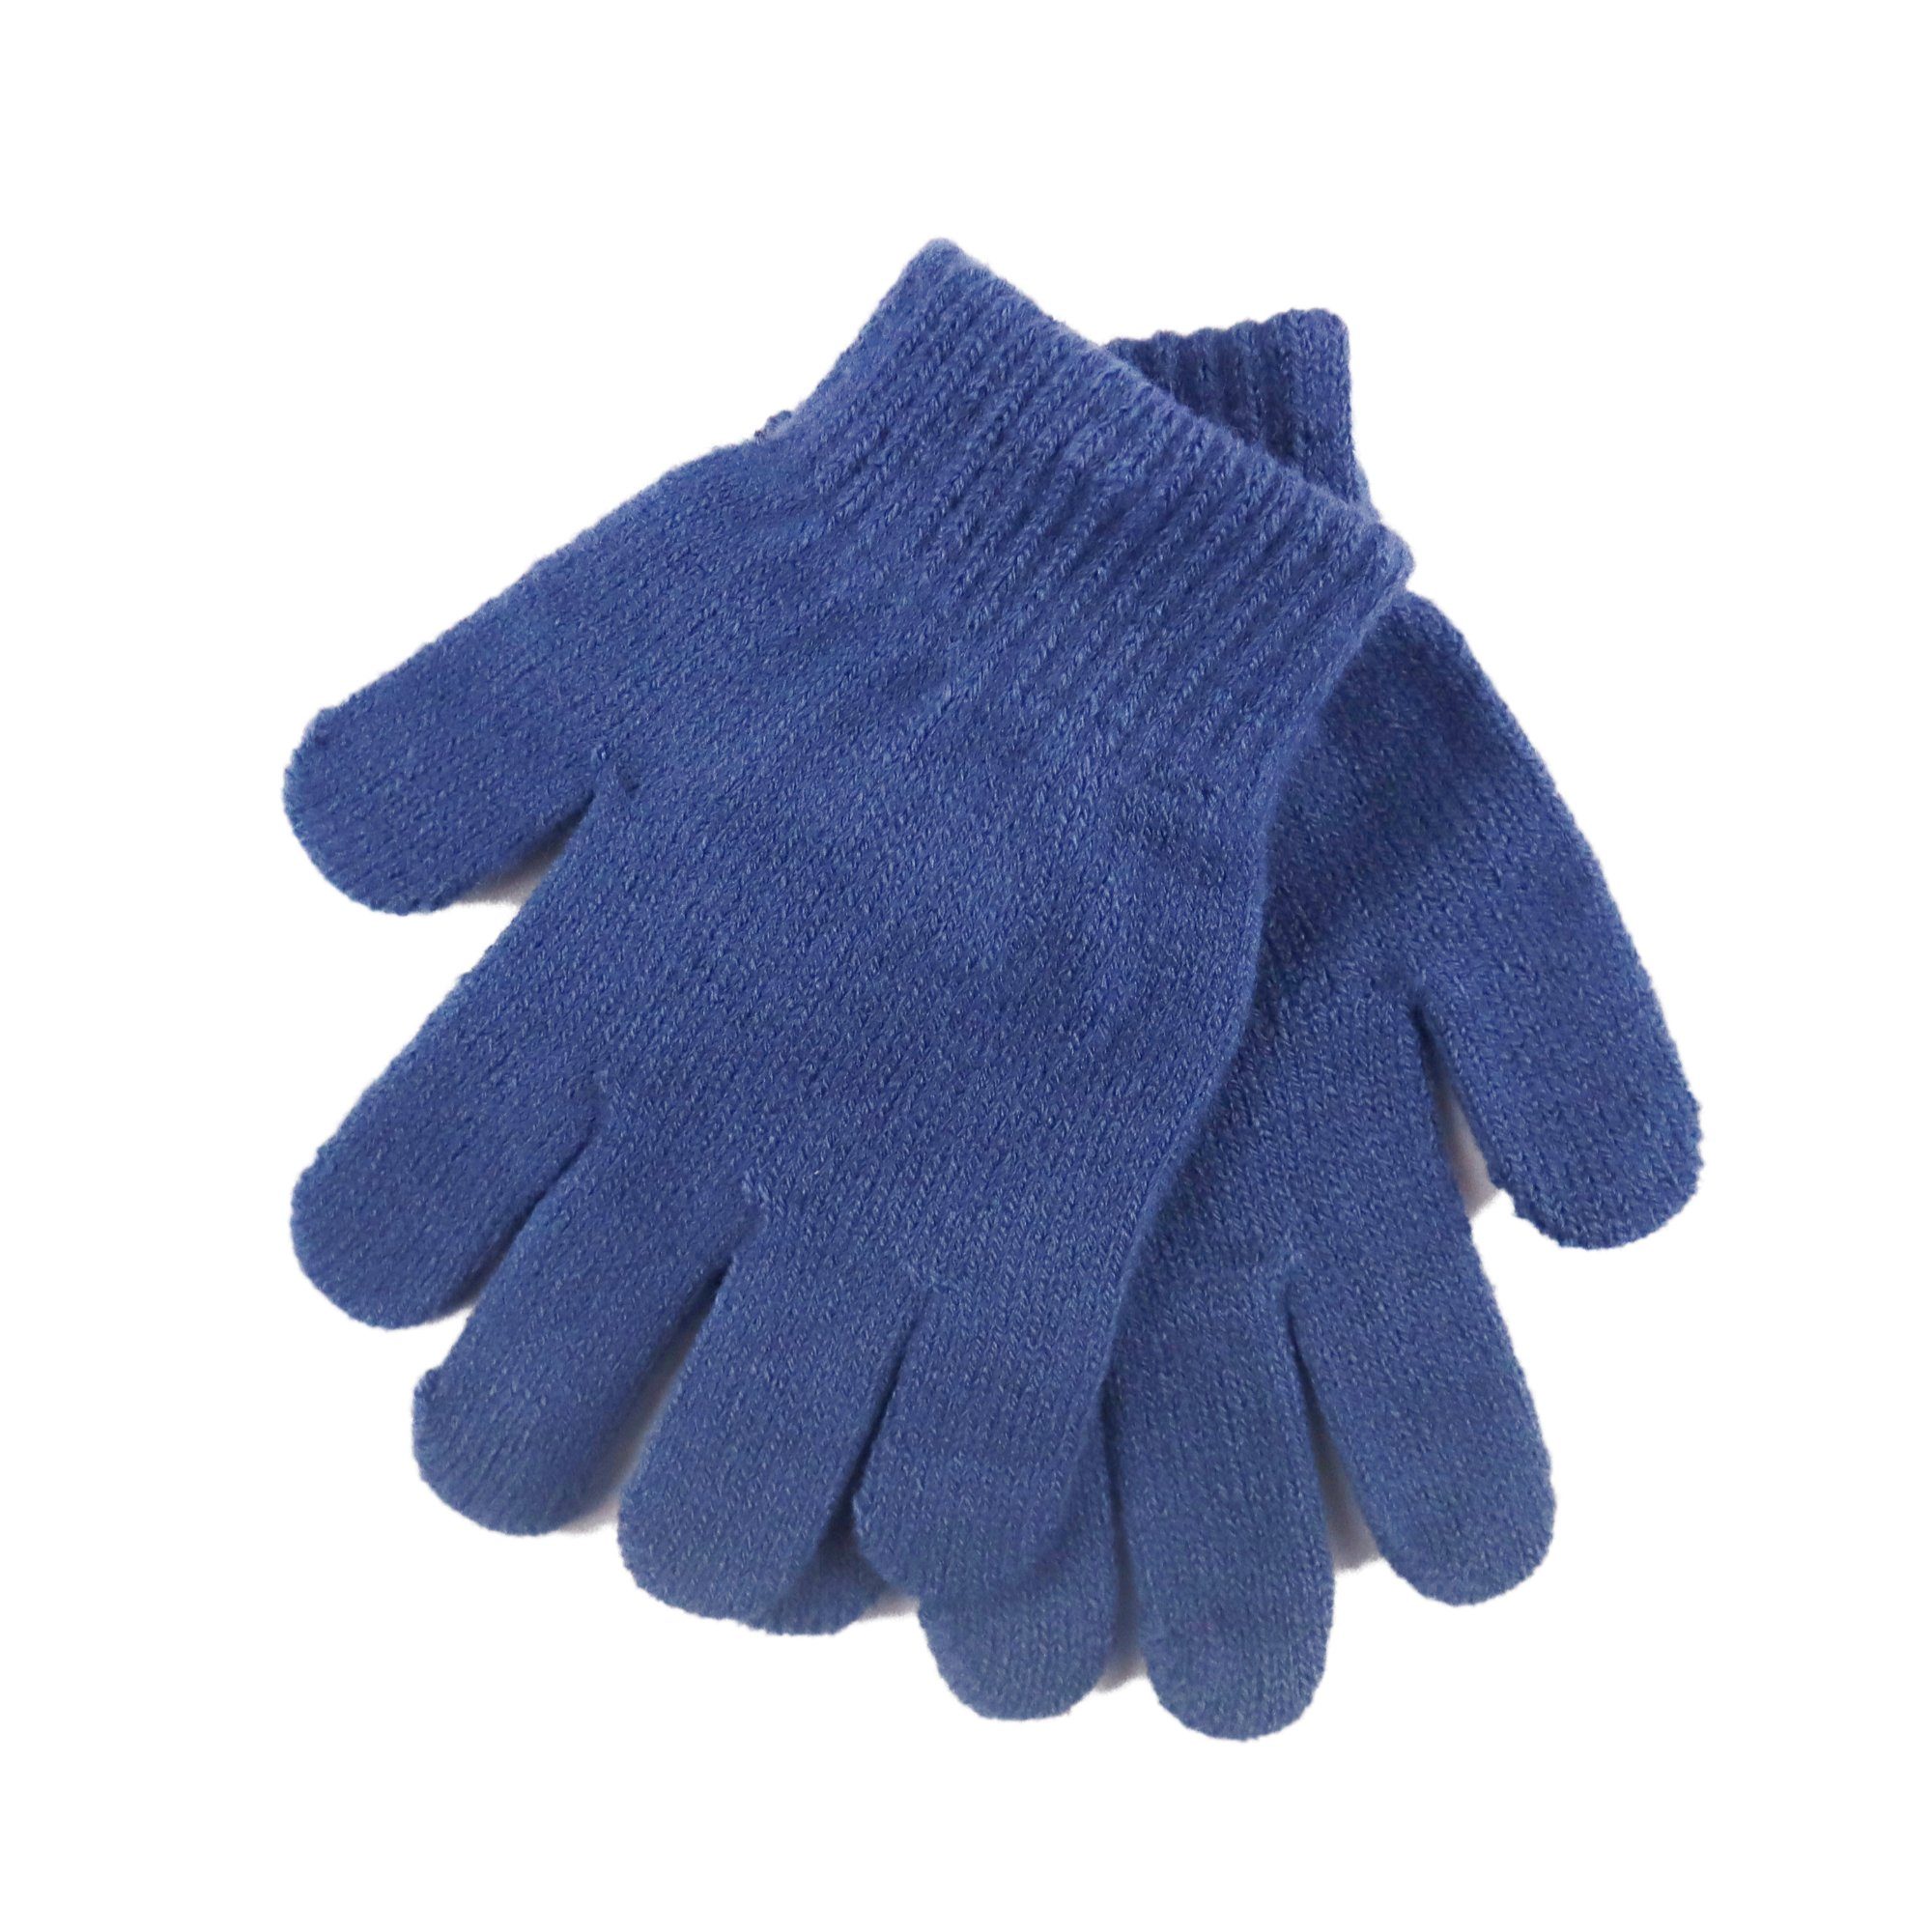 bis Ladybug 52 & - Kinder Ladybug Miraculous Jerseymütze Winterset 54 Mütze, Gr. Handschuhe - für Blau Miraculous Schal